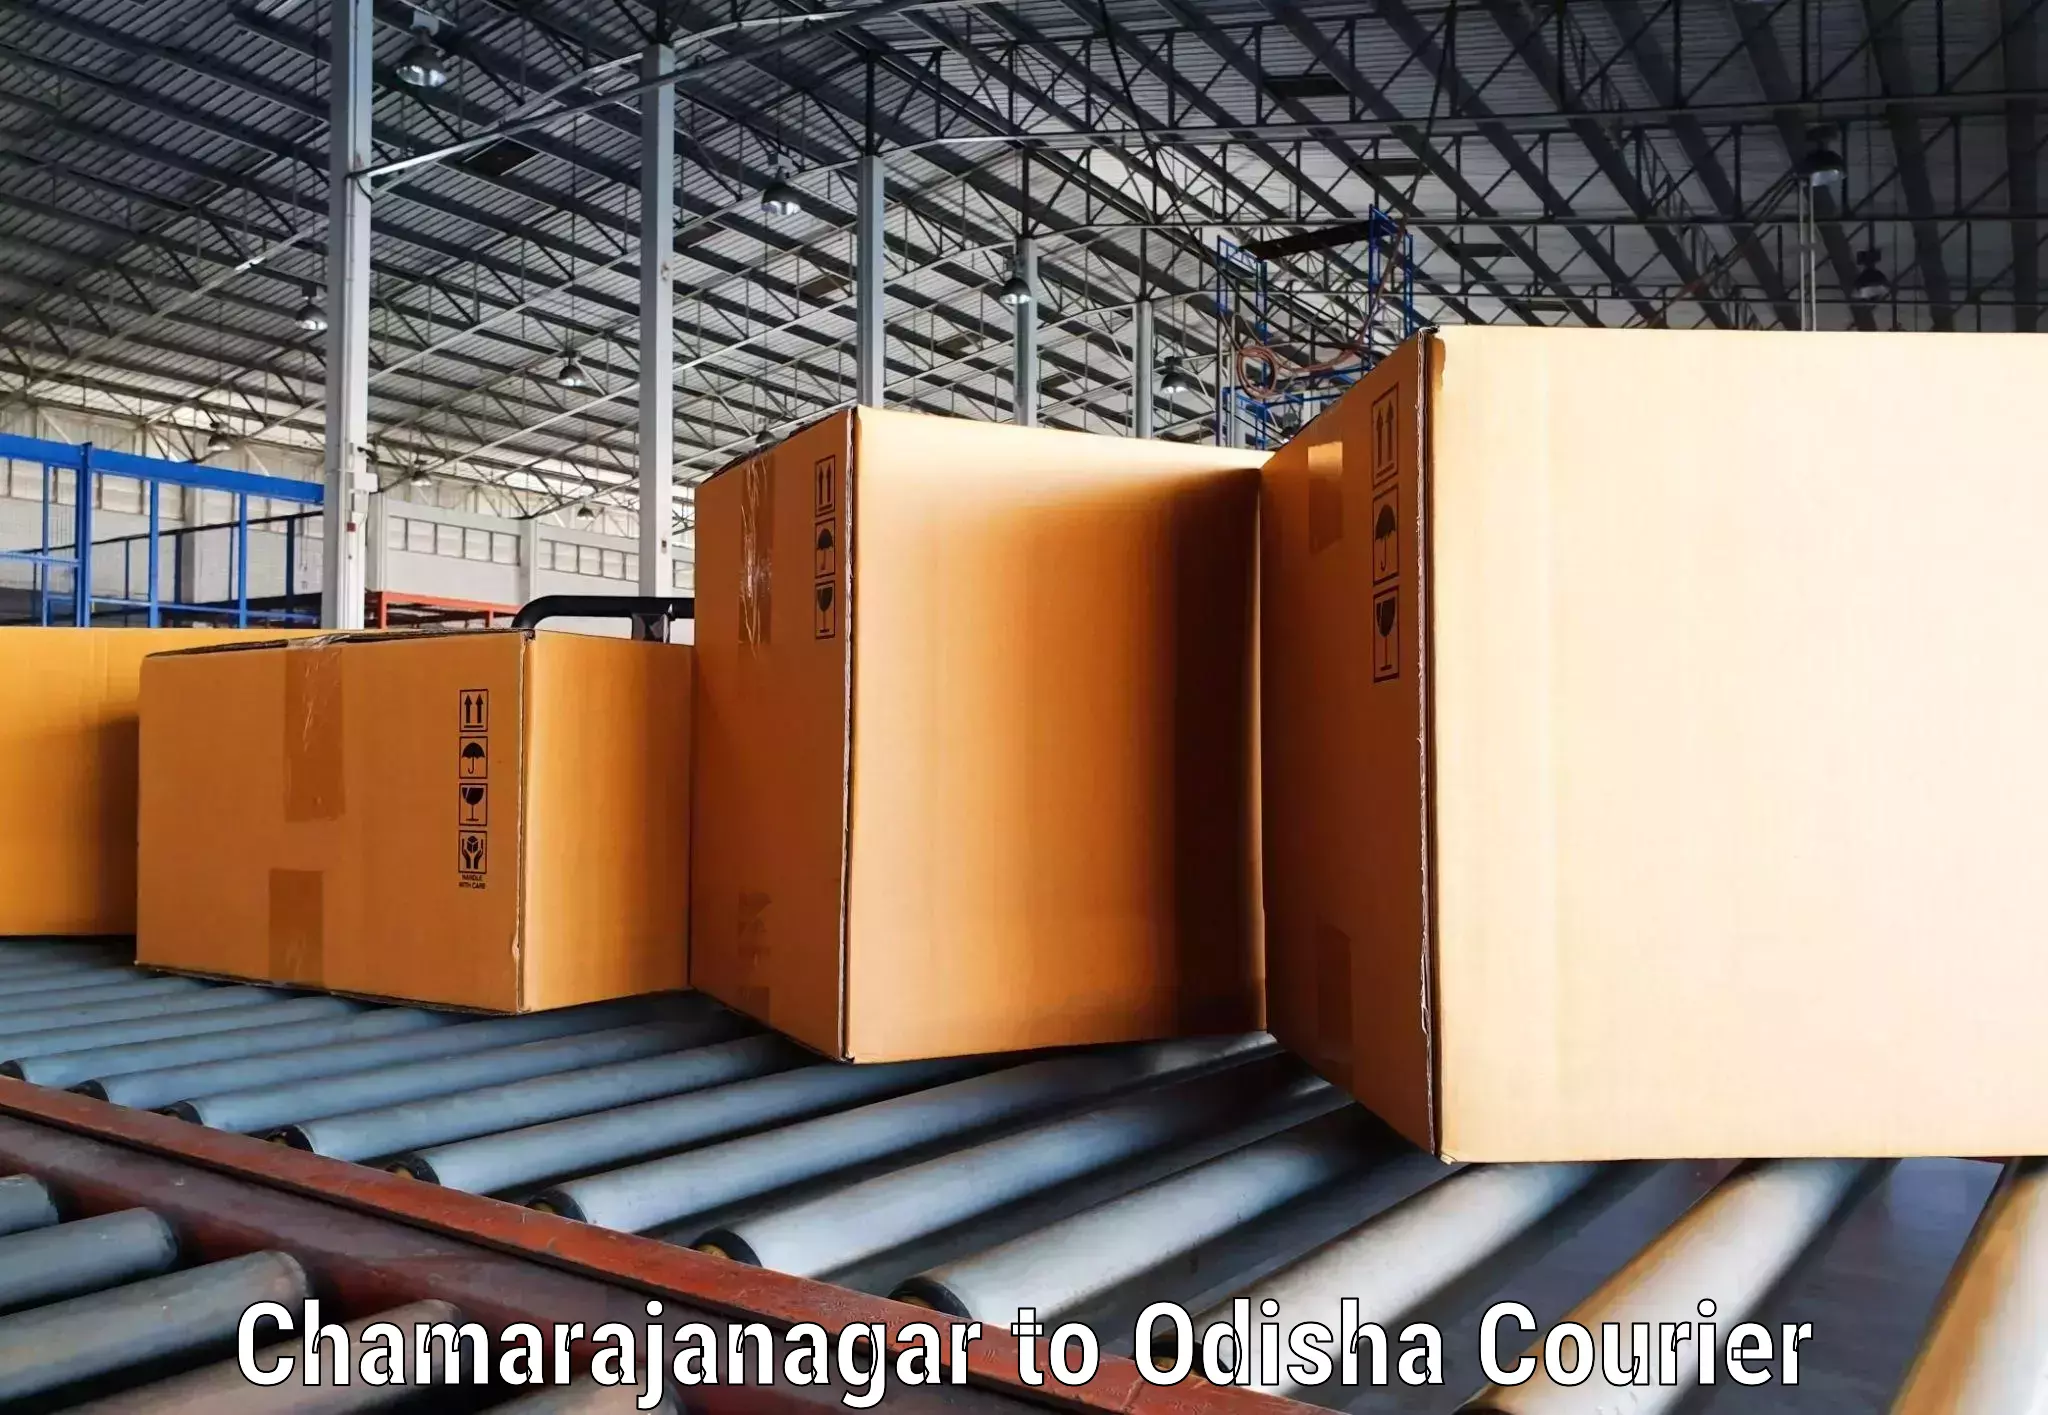 Efficient parcel transport Chamarajanagar to Paralakhemundi